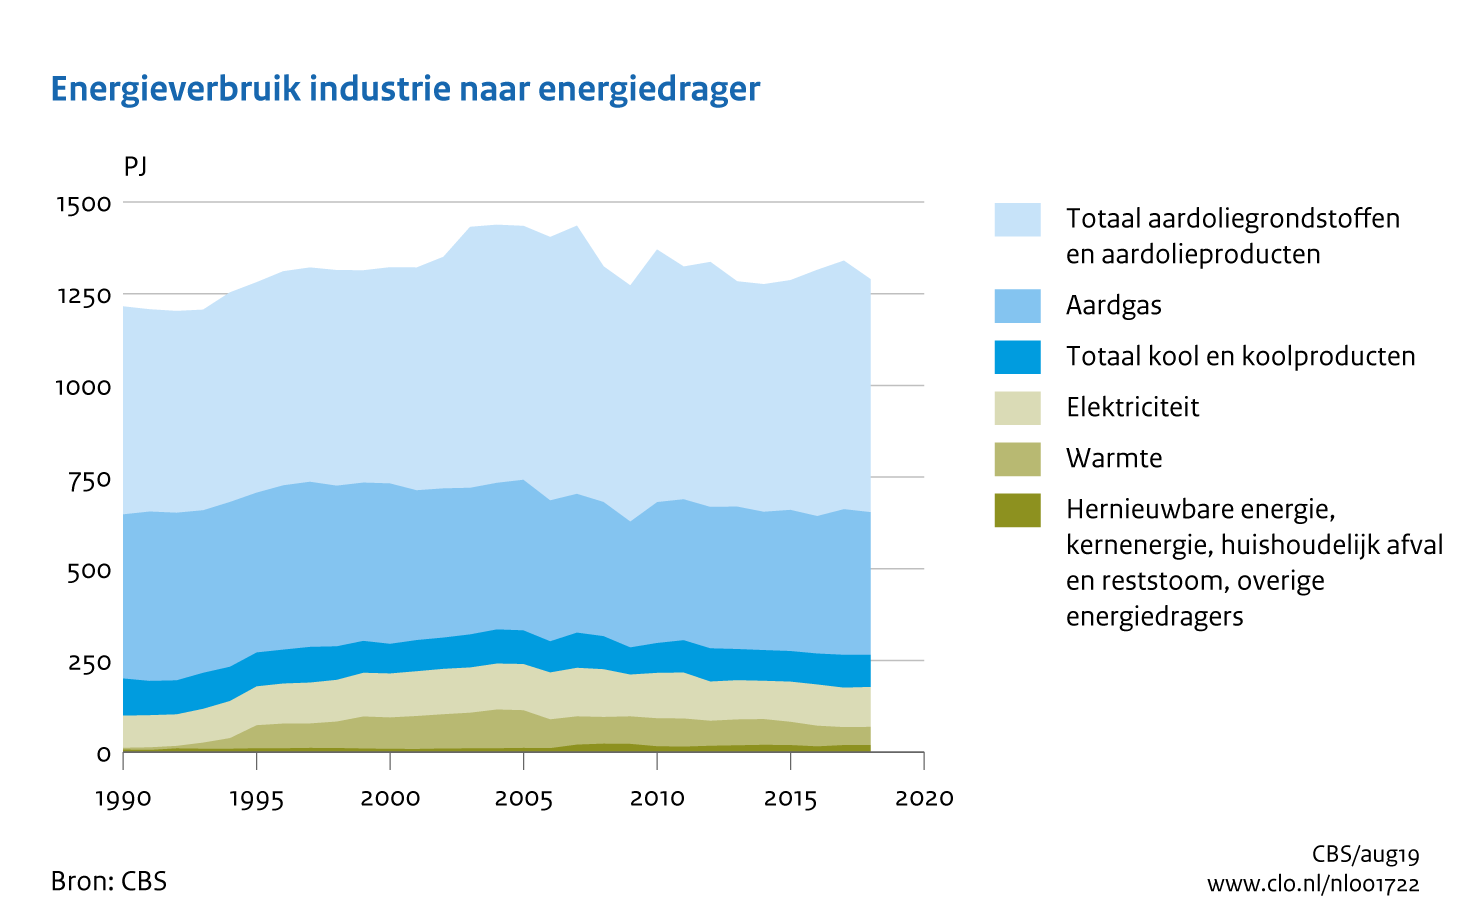 Figuur Energieverbruik industrie naar energiedrager 1990-2018. In de rest van de tekst wordt deze figuur uitgebreider uitgelegd.